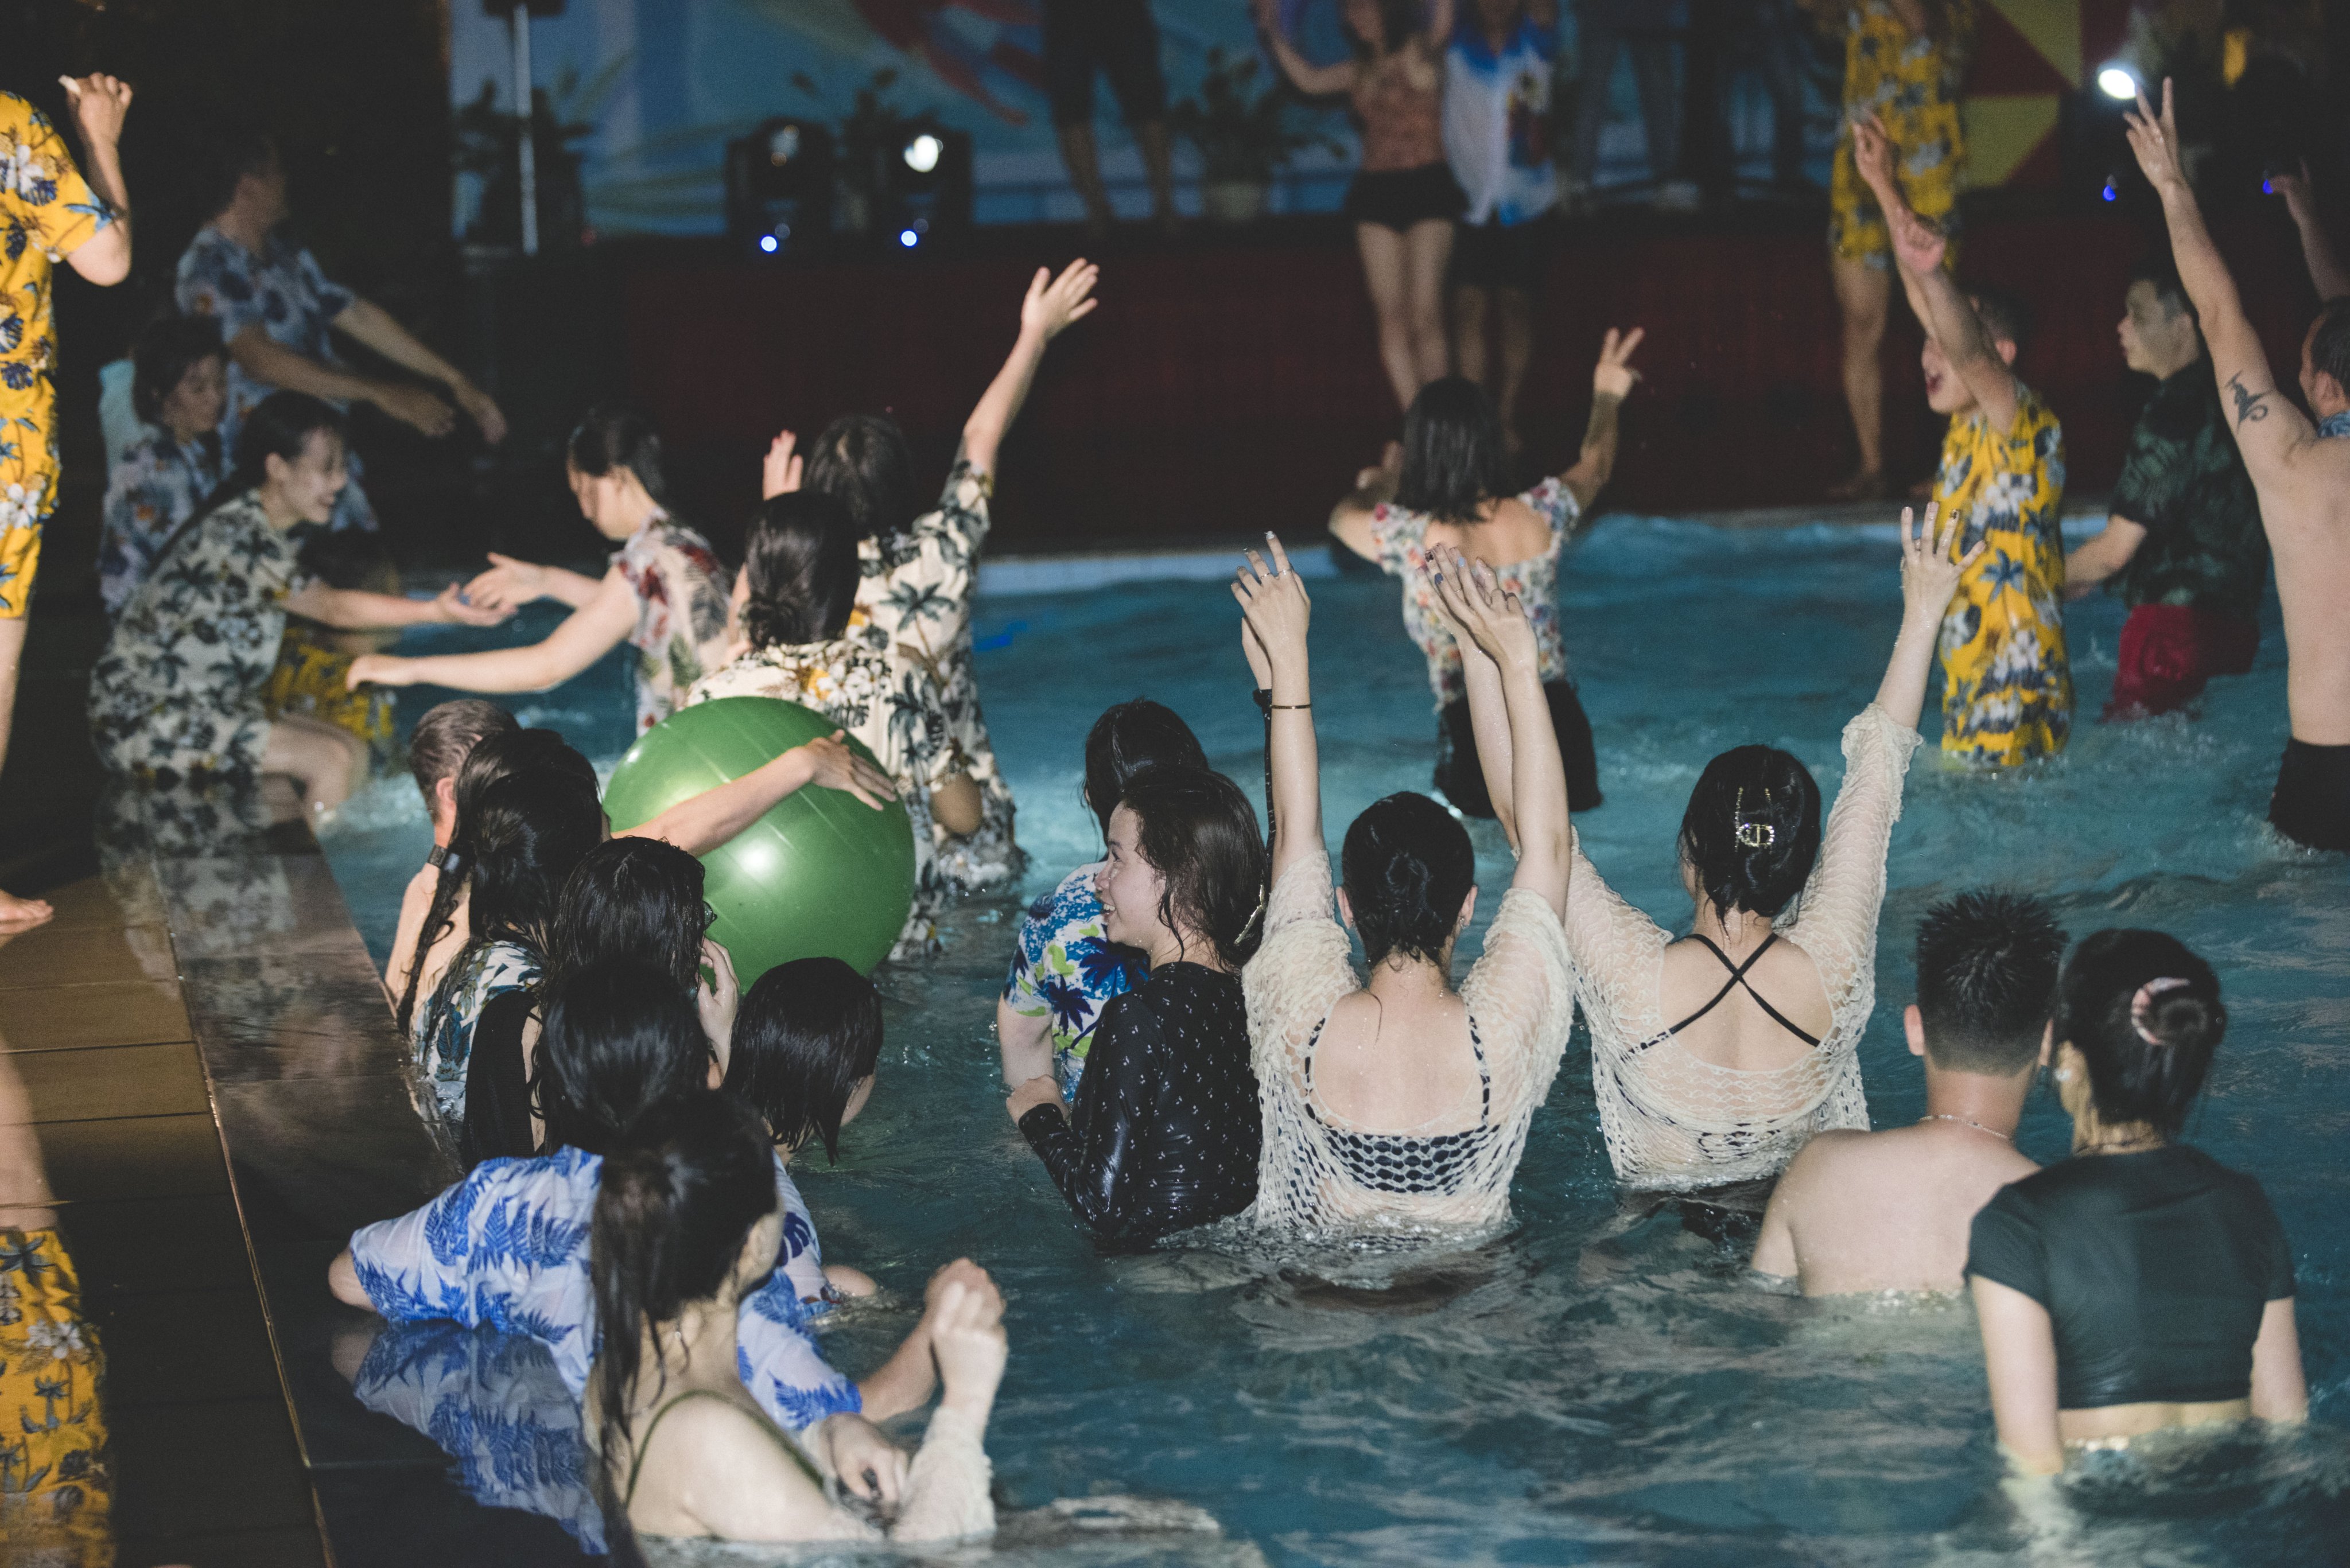 Pool Party – “Quẩy hết mình đi”